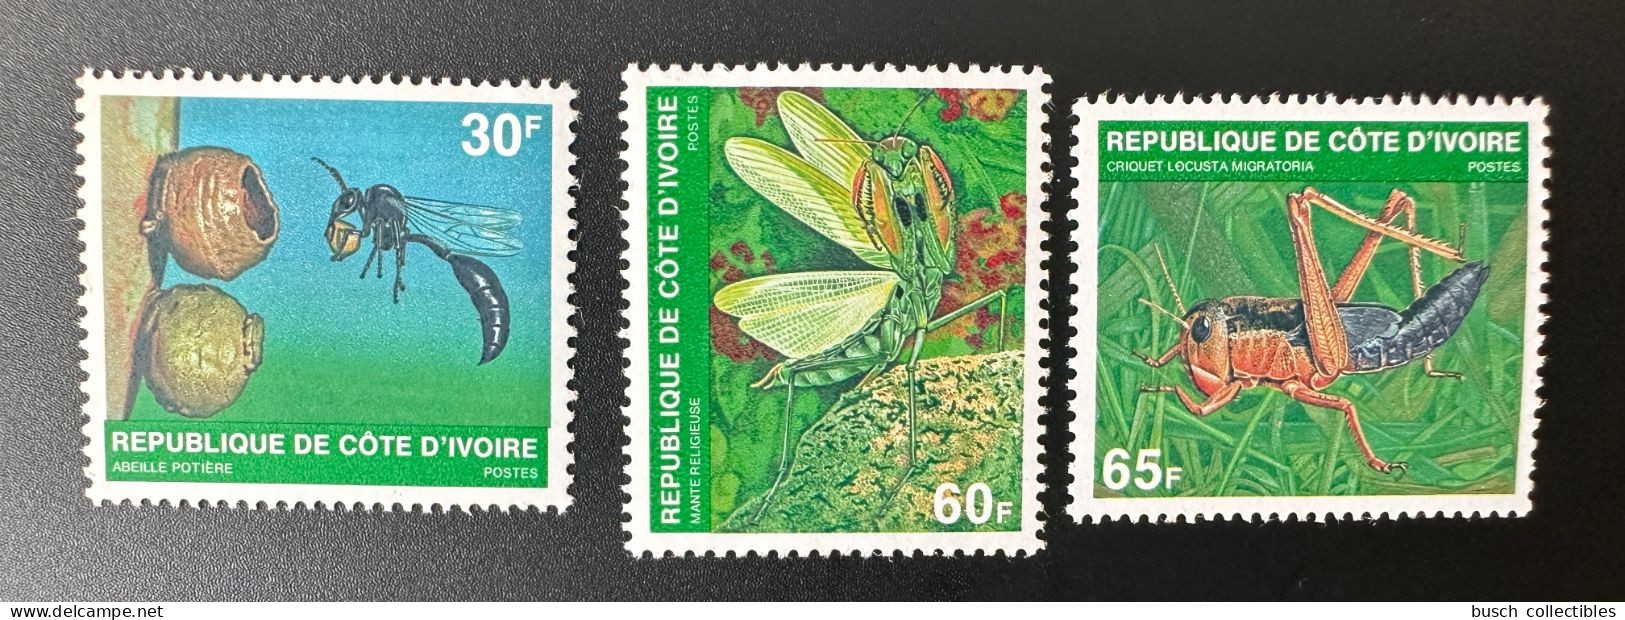 Côte D'Ivoire Ivory Coast 1979 Mi. A - C 611 Insectes Insects Insekten Abeille Potière Bee Biene Mante Religieuse - Ivory Coast (1960-...)